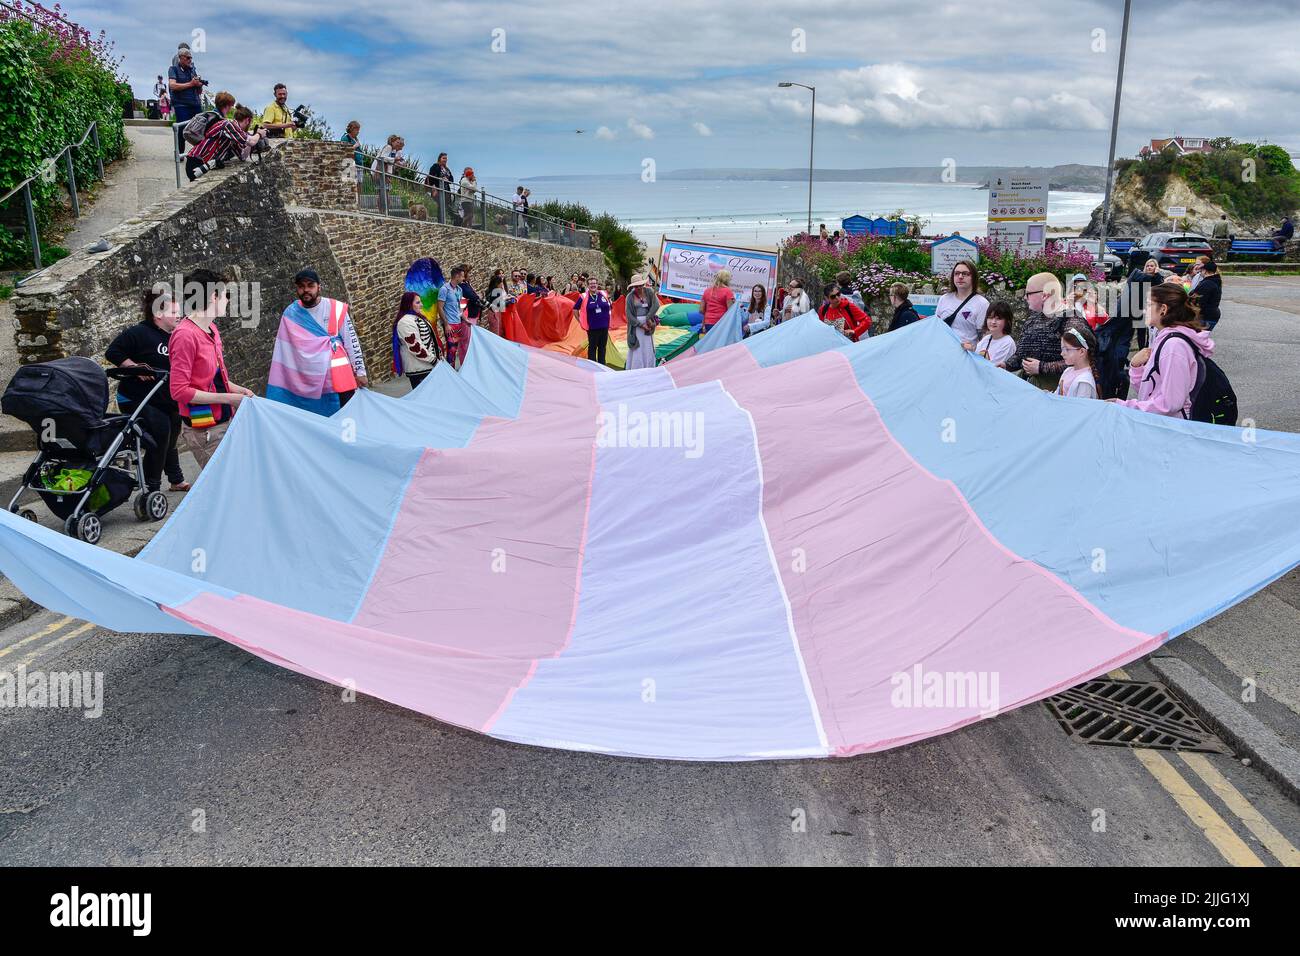 Le drapeau de transgenre Pride tenu par les participants au défilé de fierté des prides de Cornwall dans le centre-ville de Newquay, au Royaume-Uni. Banque D'Images